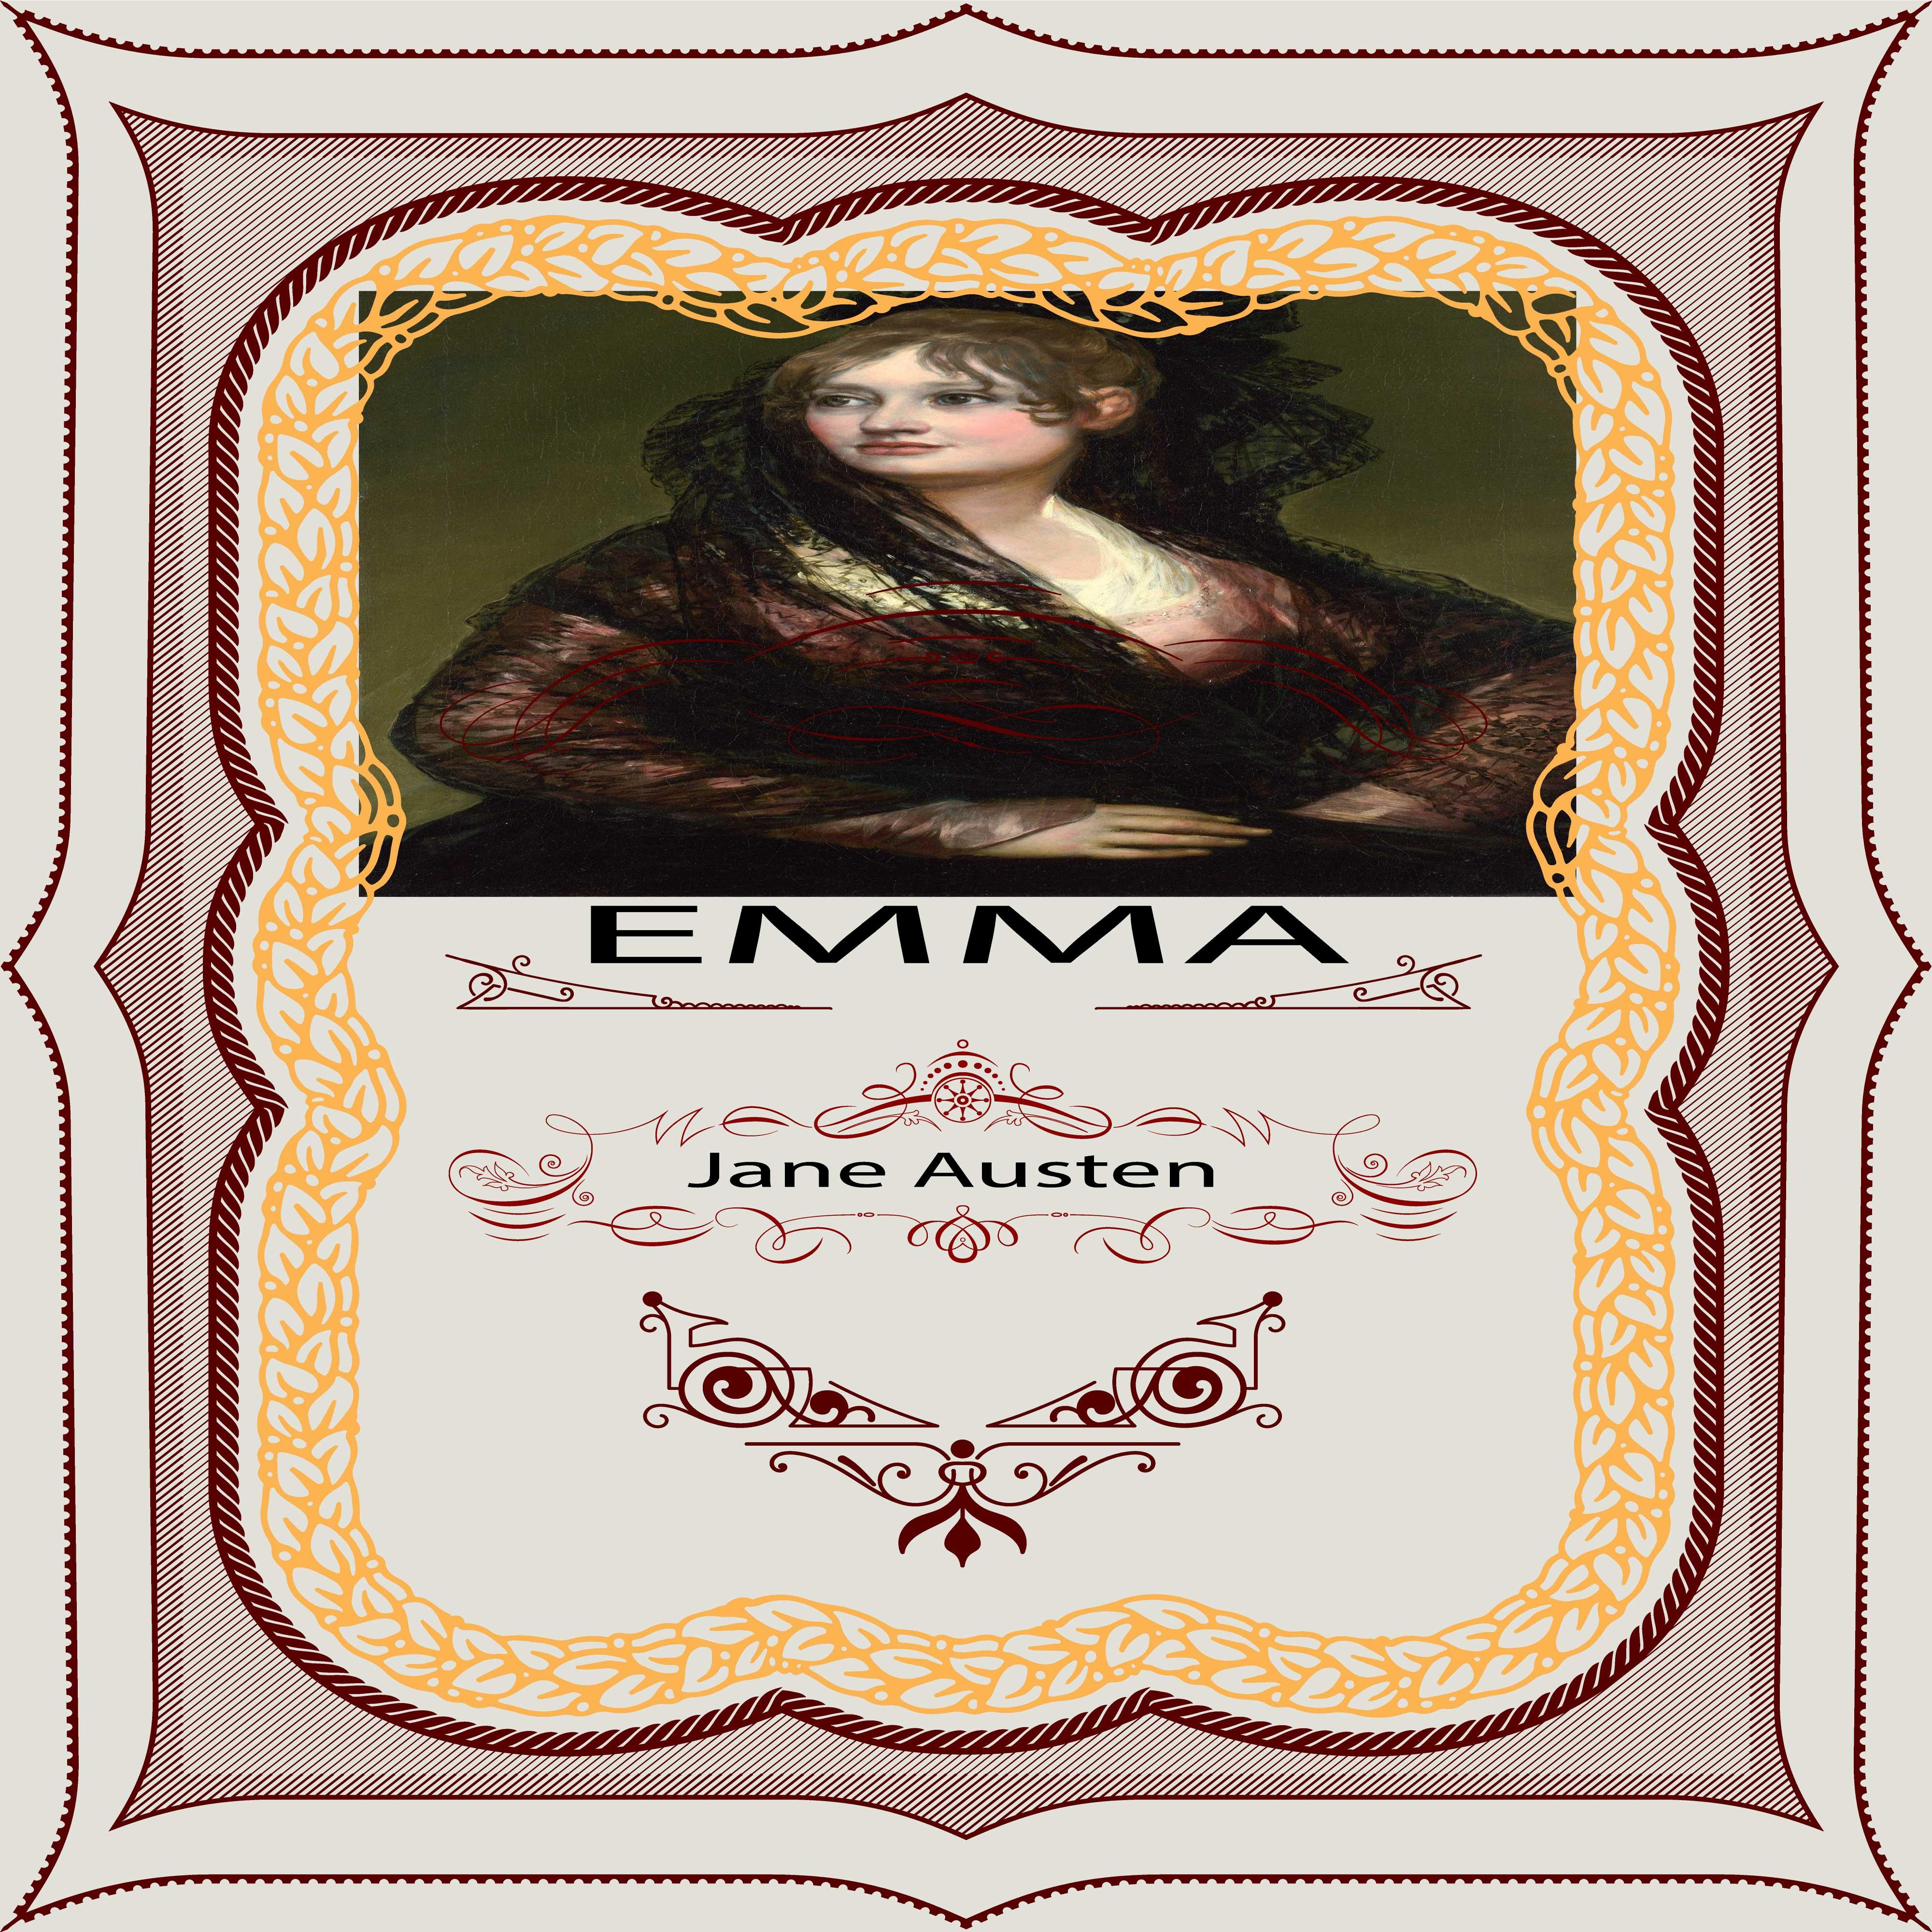 Jane Austen: Emma, Pt. 1, Chapter 10